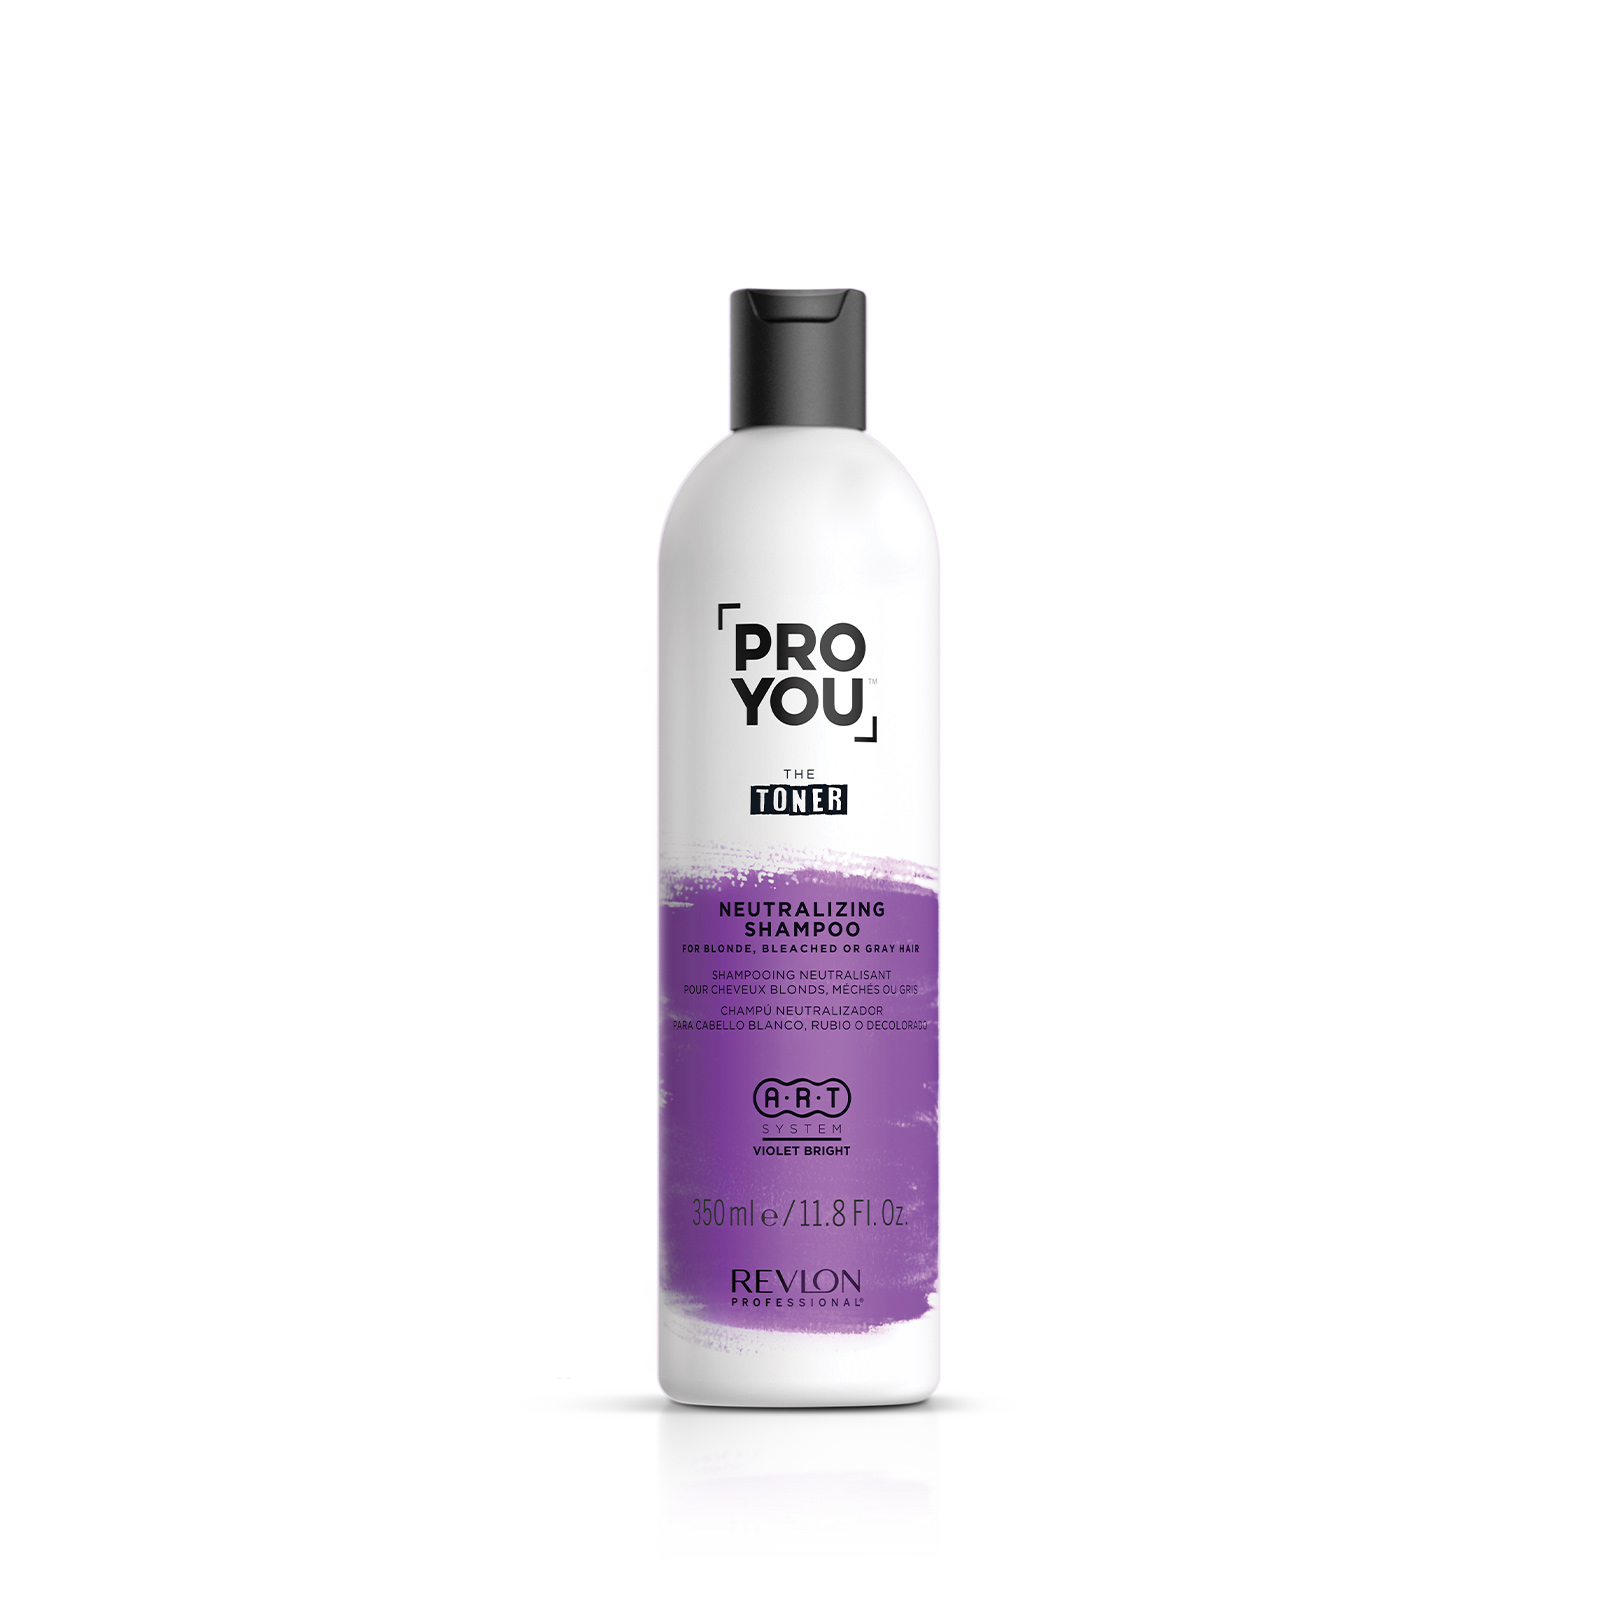 Pro You™ The Toner Neutralizing Shampoo - Revlon Professional